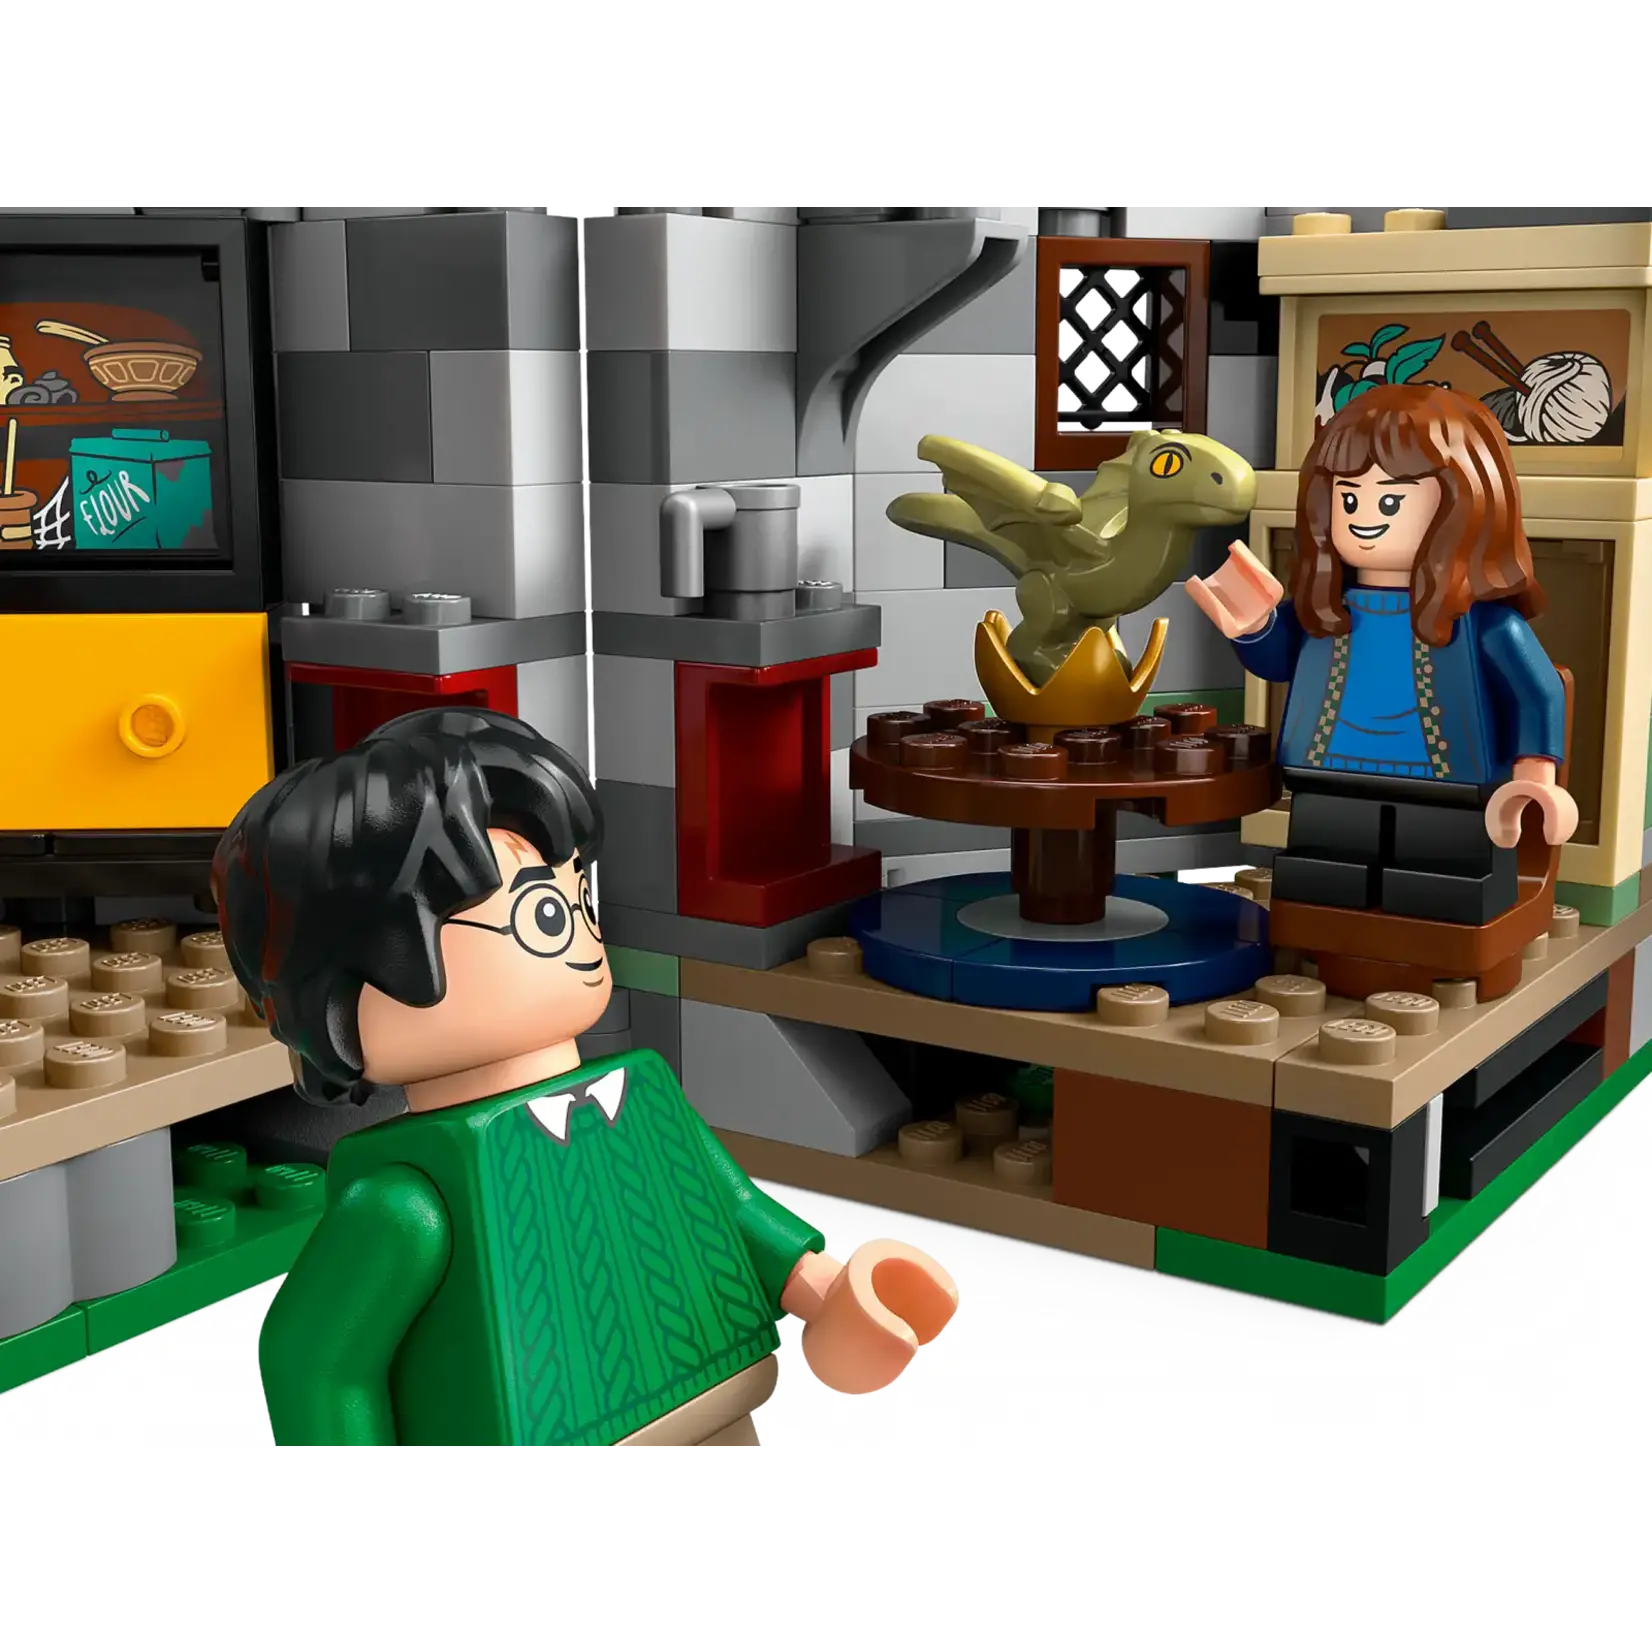 LEGO LEGO Harry Potter Hagrids Huisje Onverwacht Bezoek (76428)